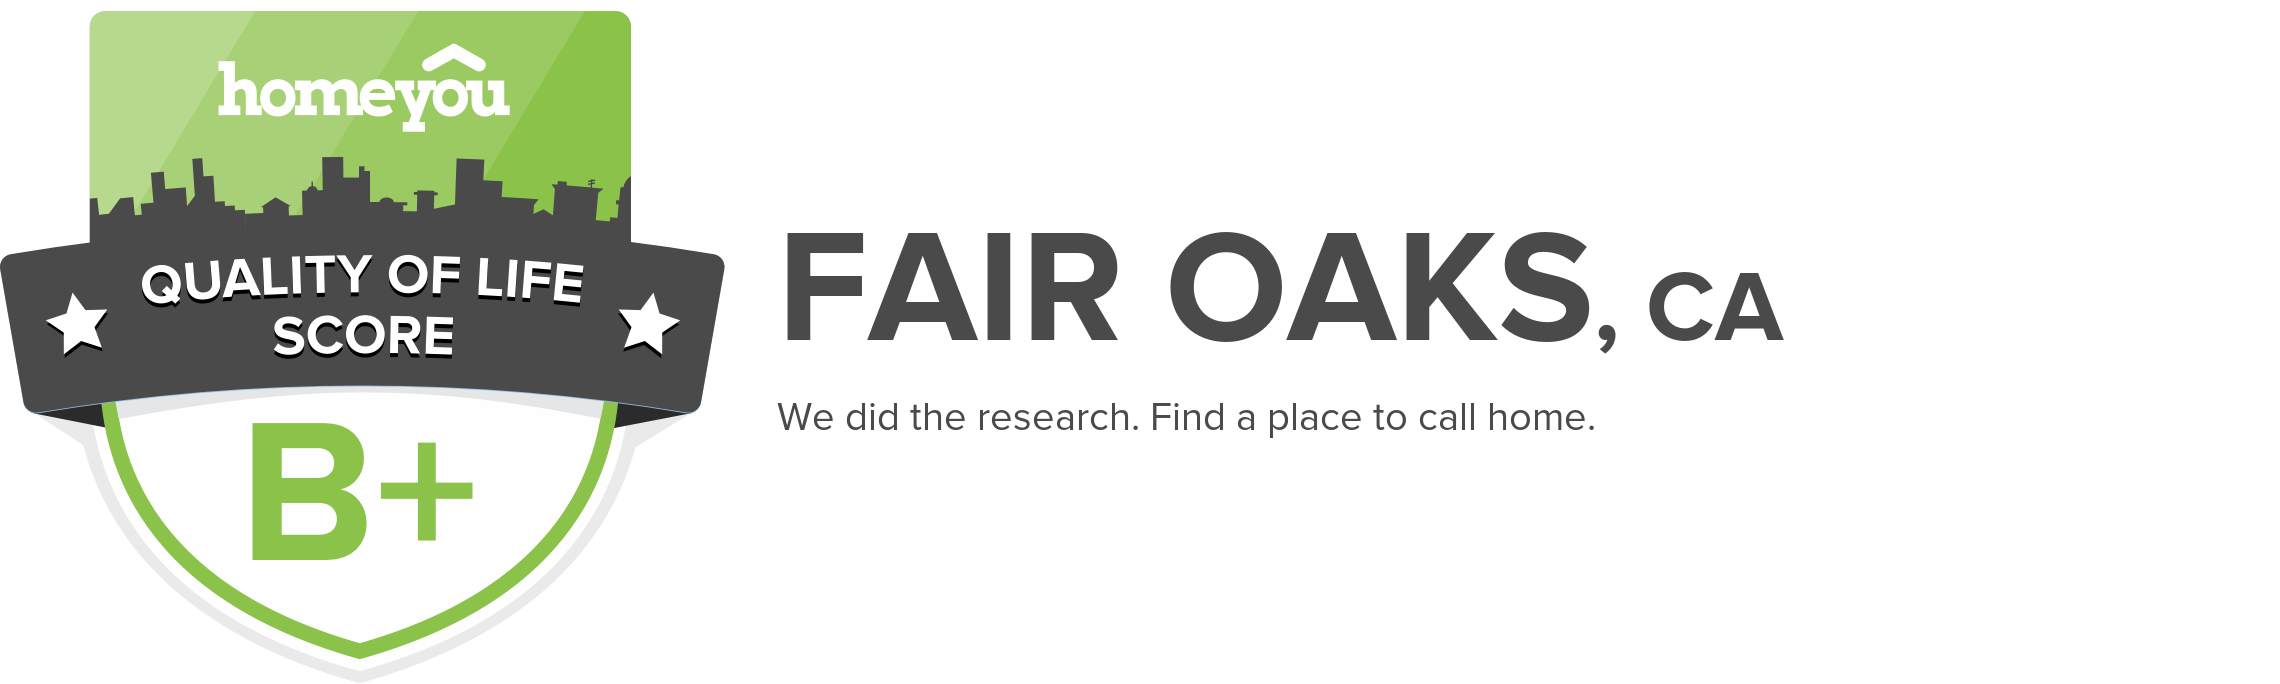 Fair Oaks, CA